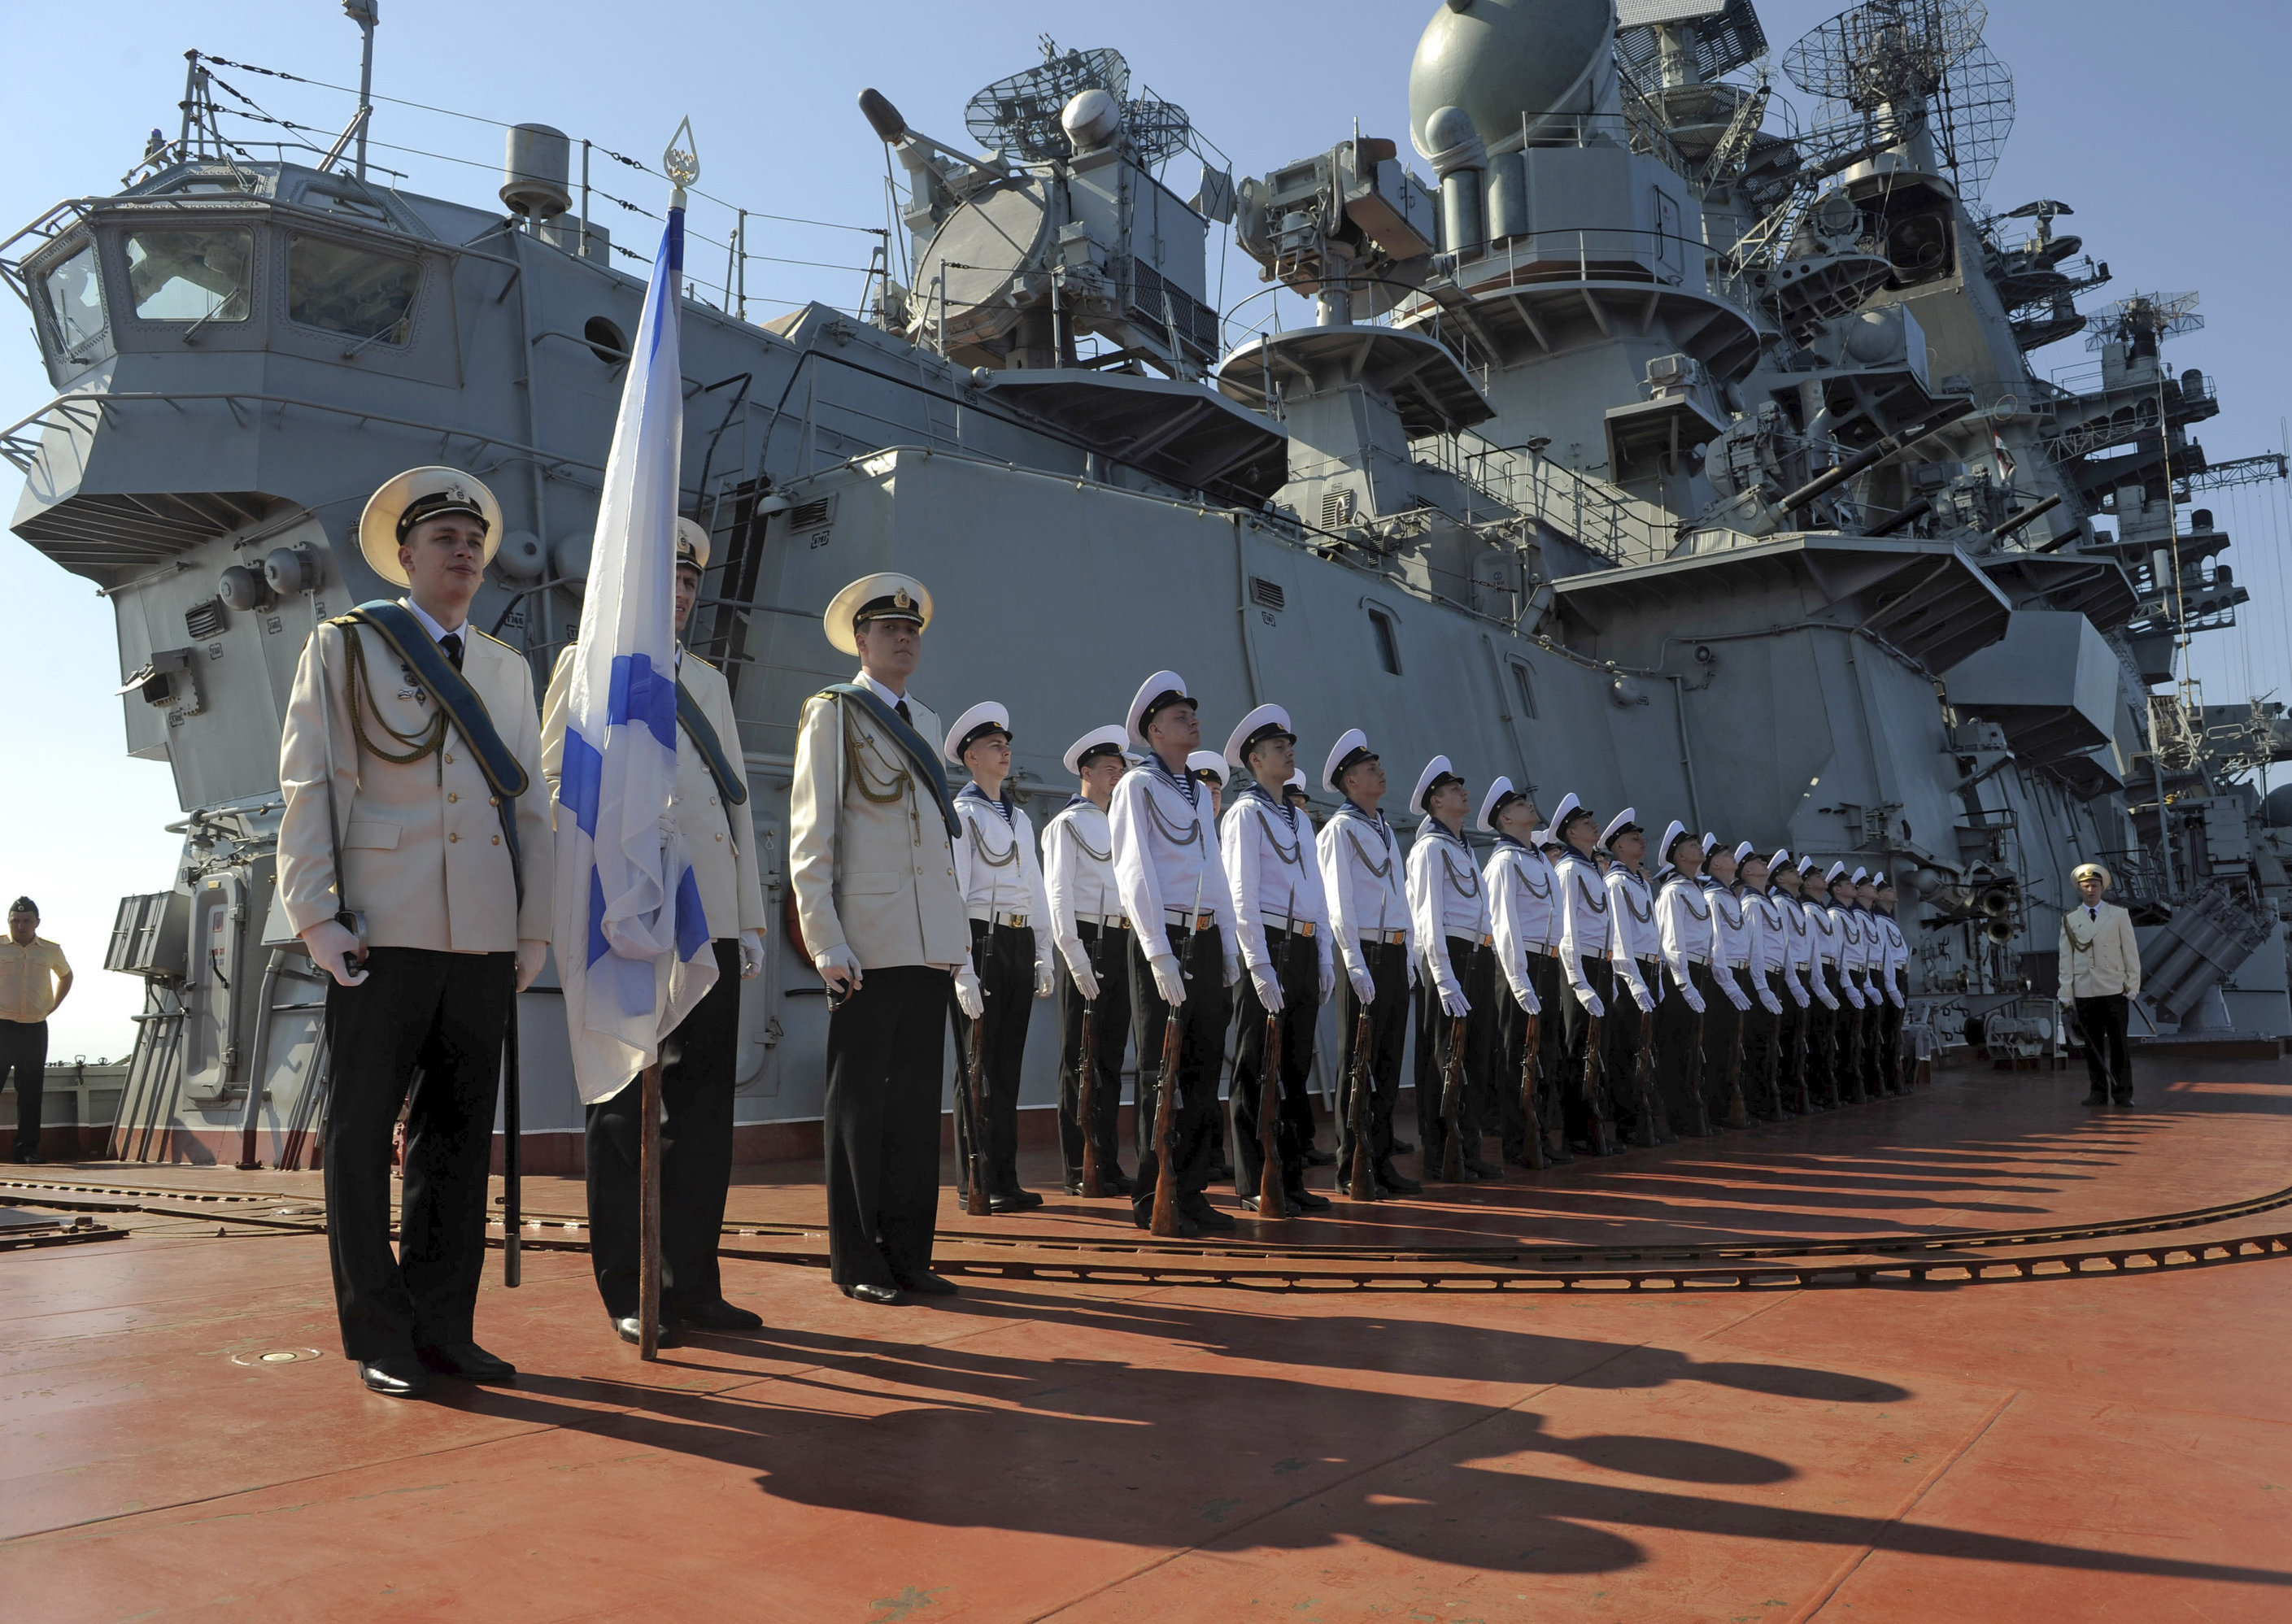 Сеута, неофициальная база ВМФ России в Гибралтарском проливе